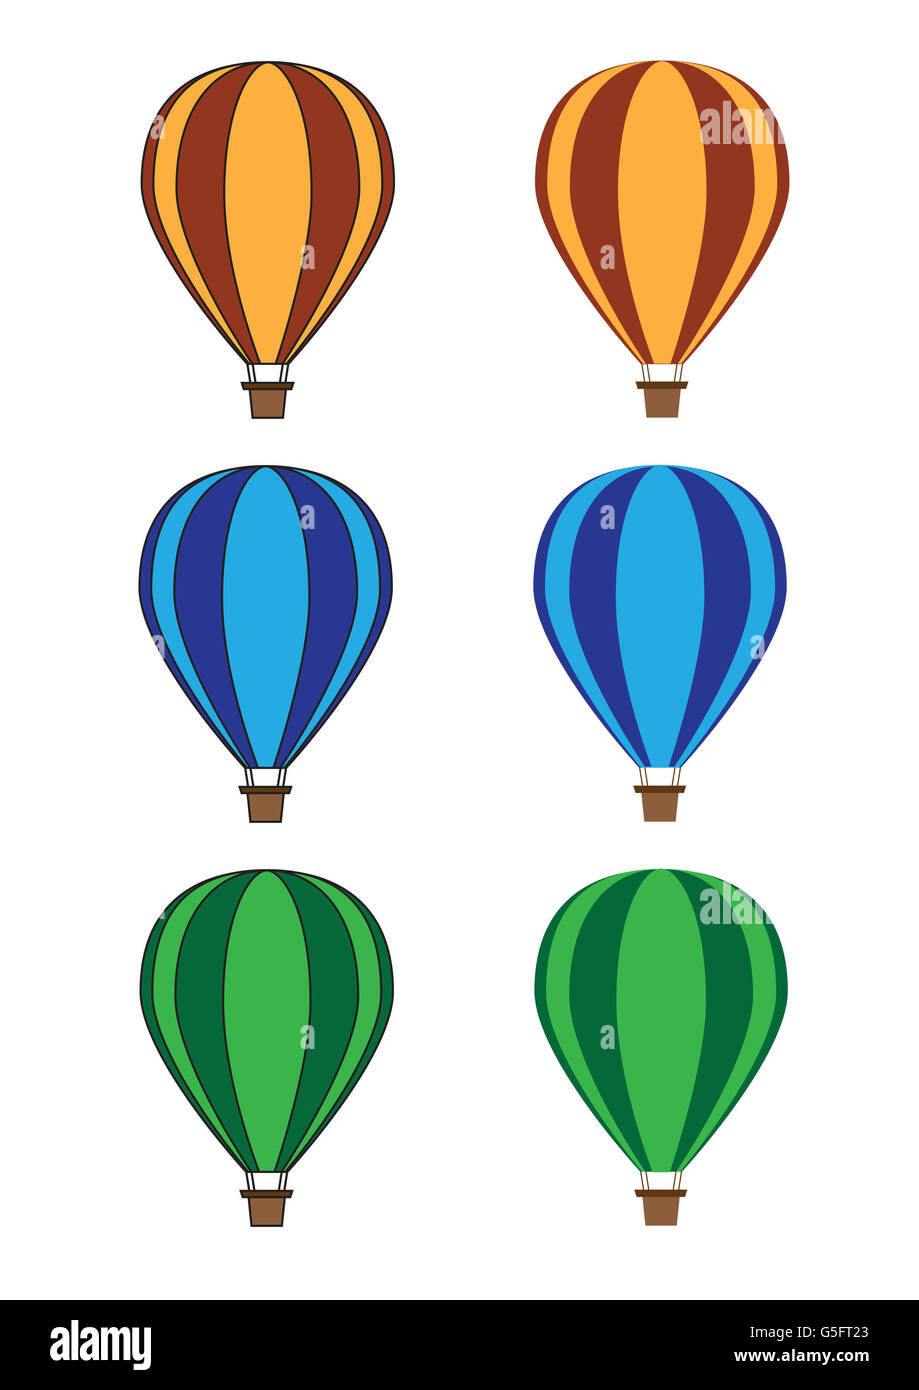 Illustrations de montgolfières Banque D'Images